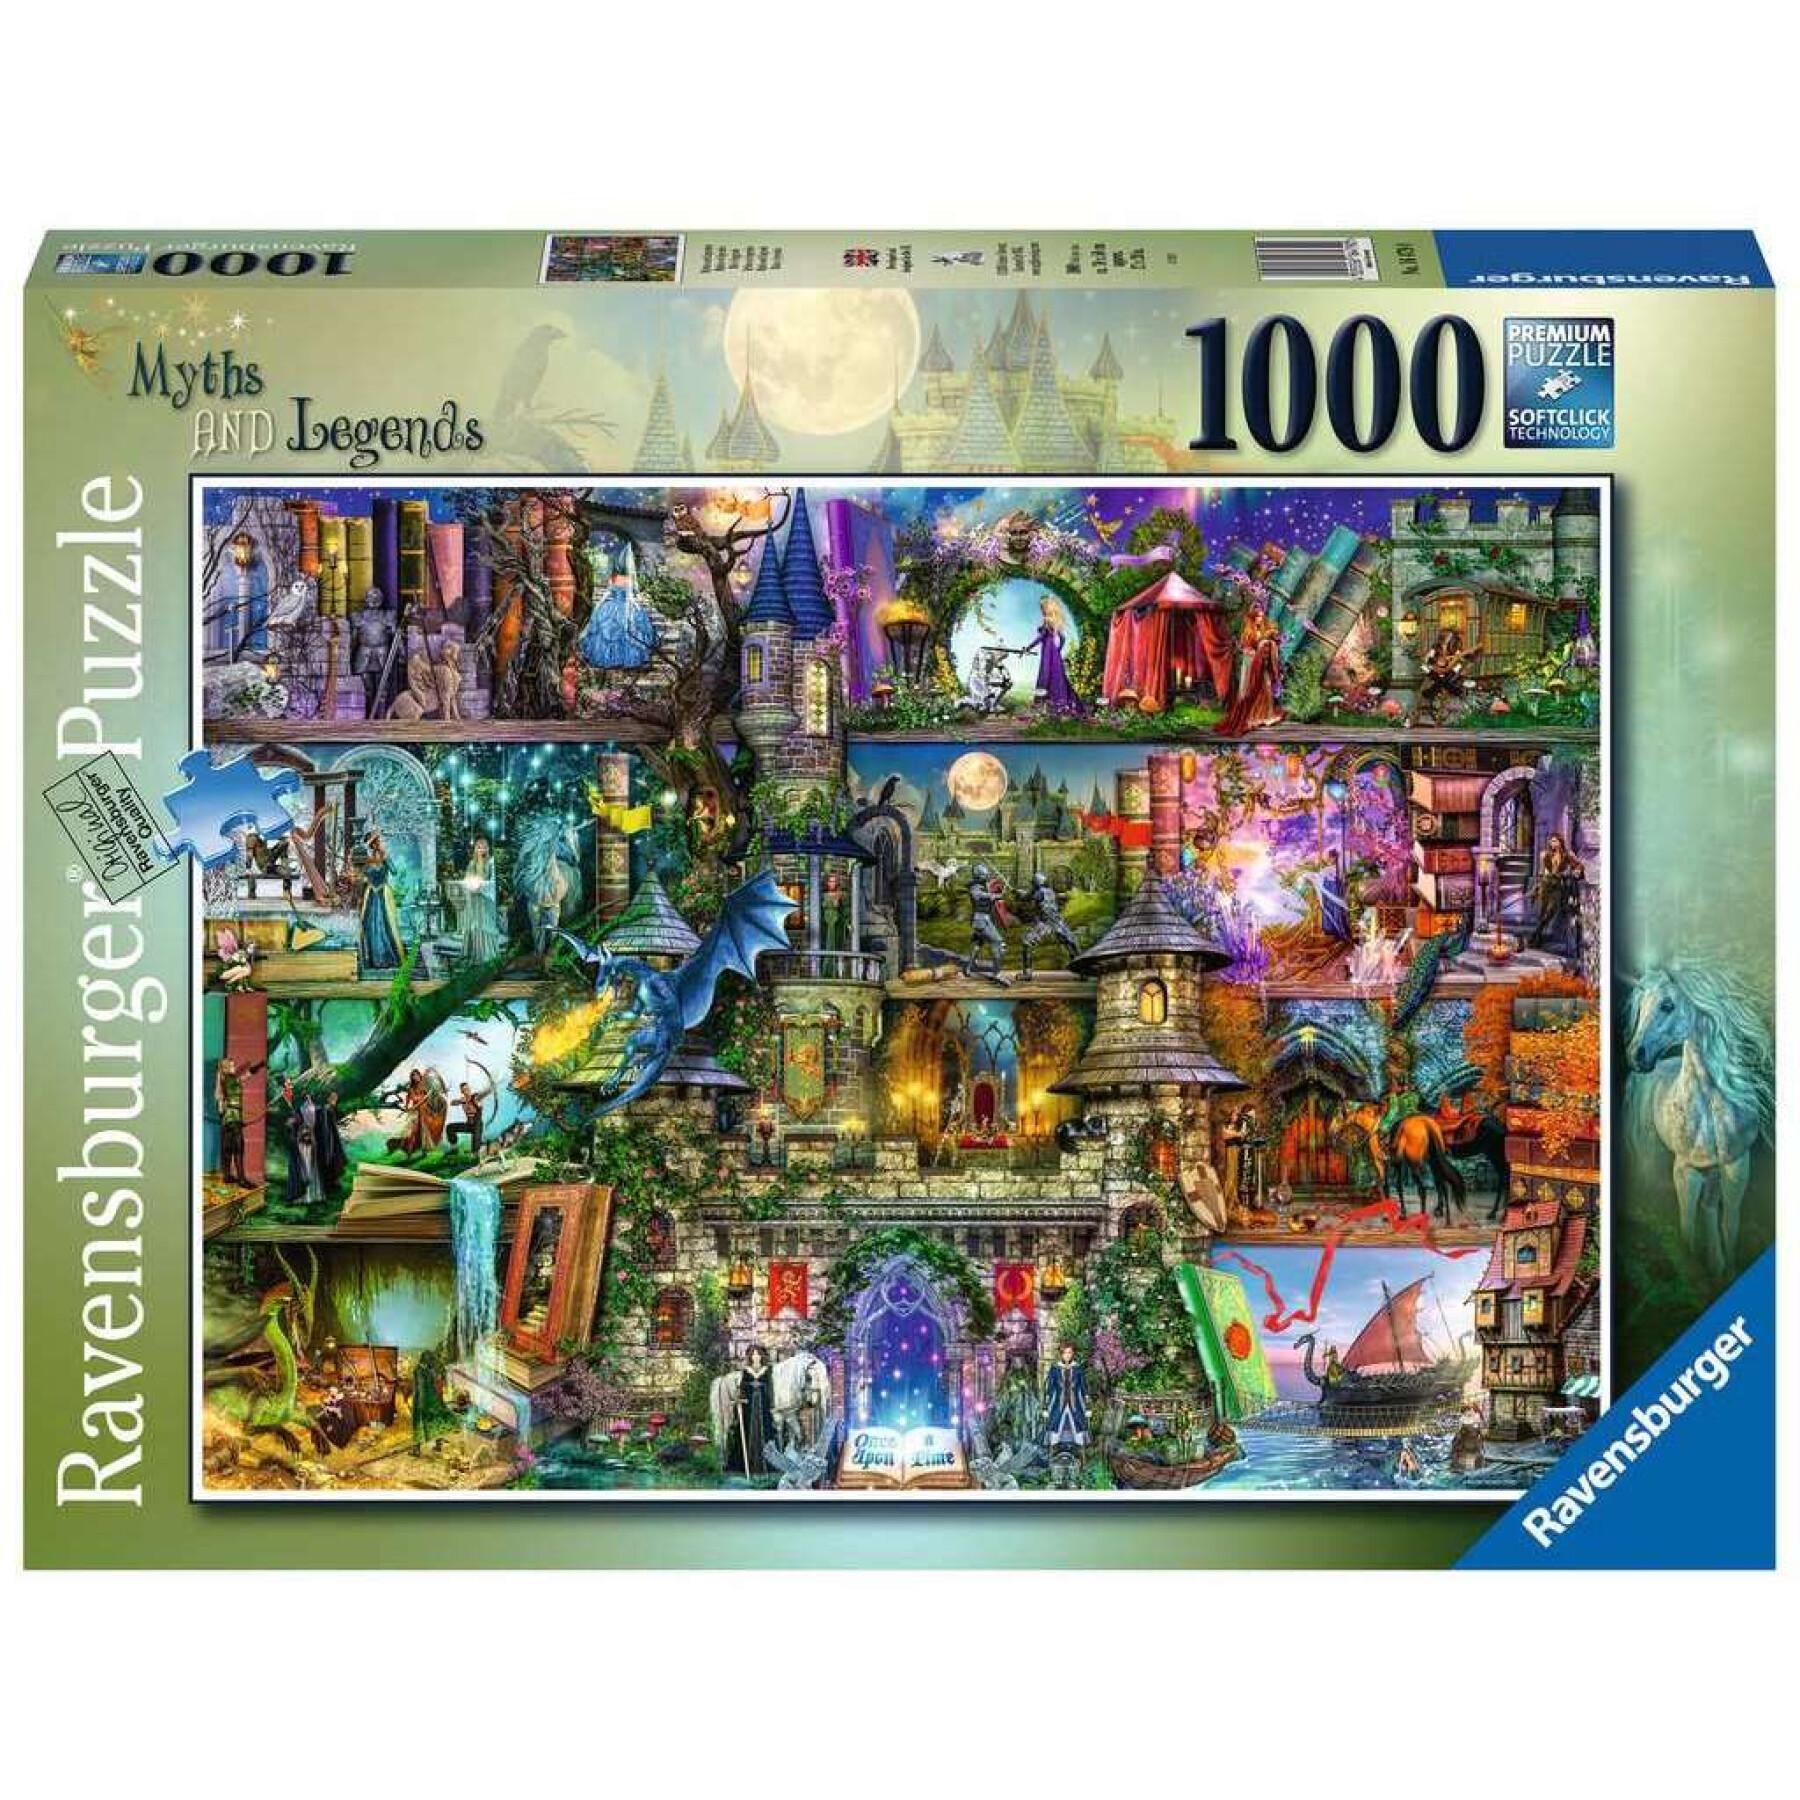 Puzzle de 1000 piezas mitos y leyendas Ravensburger